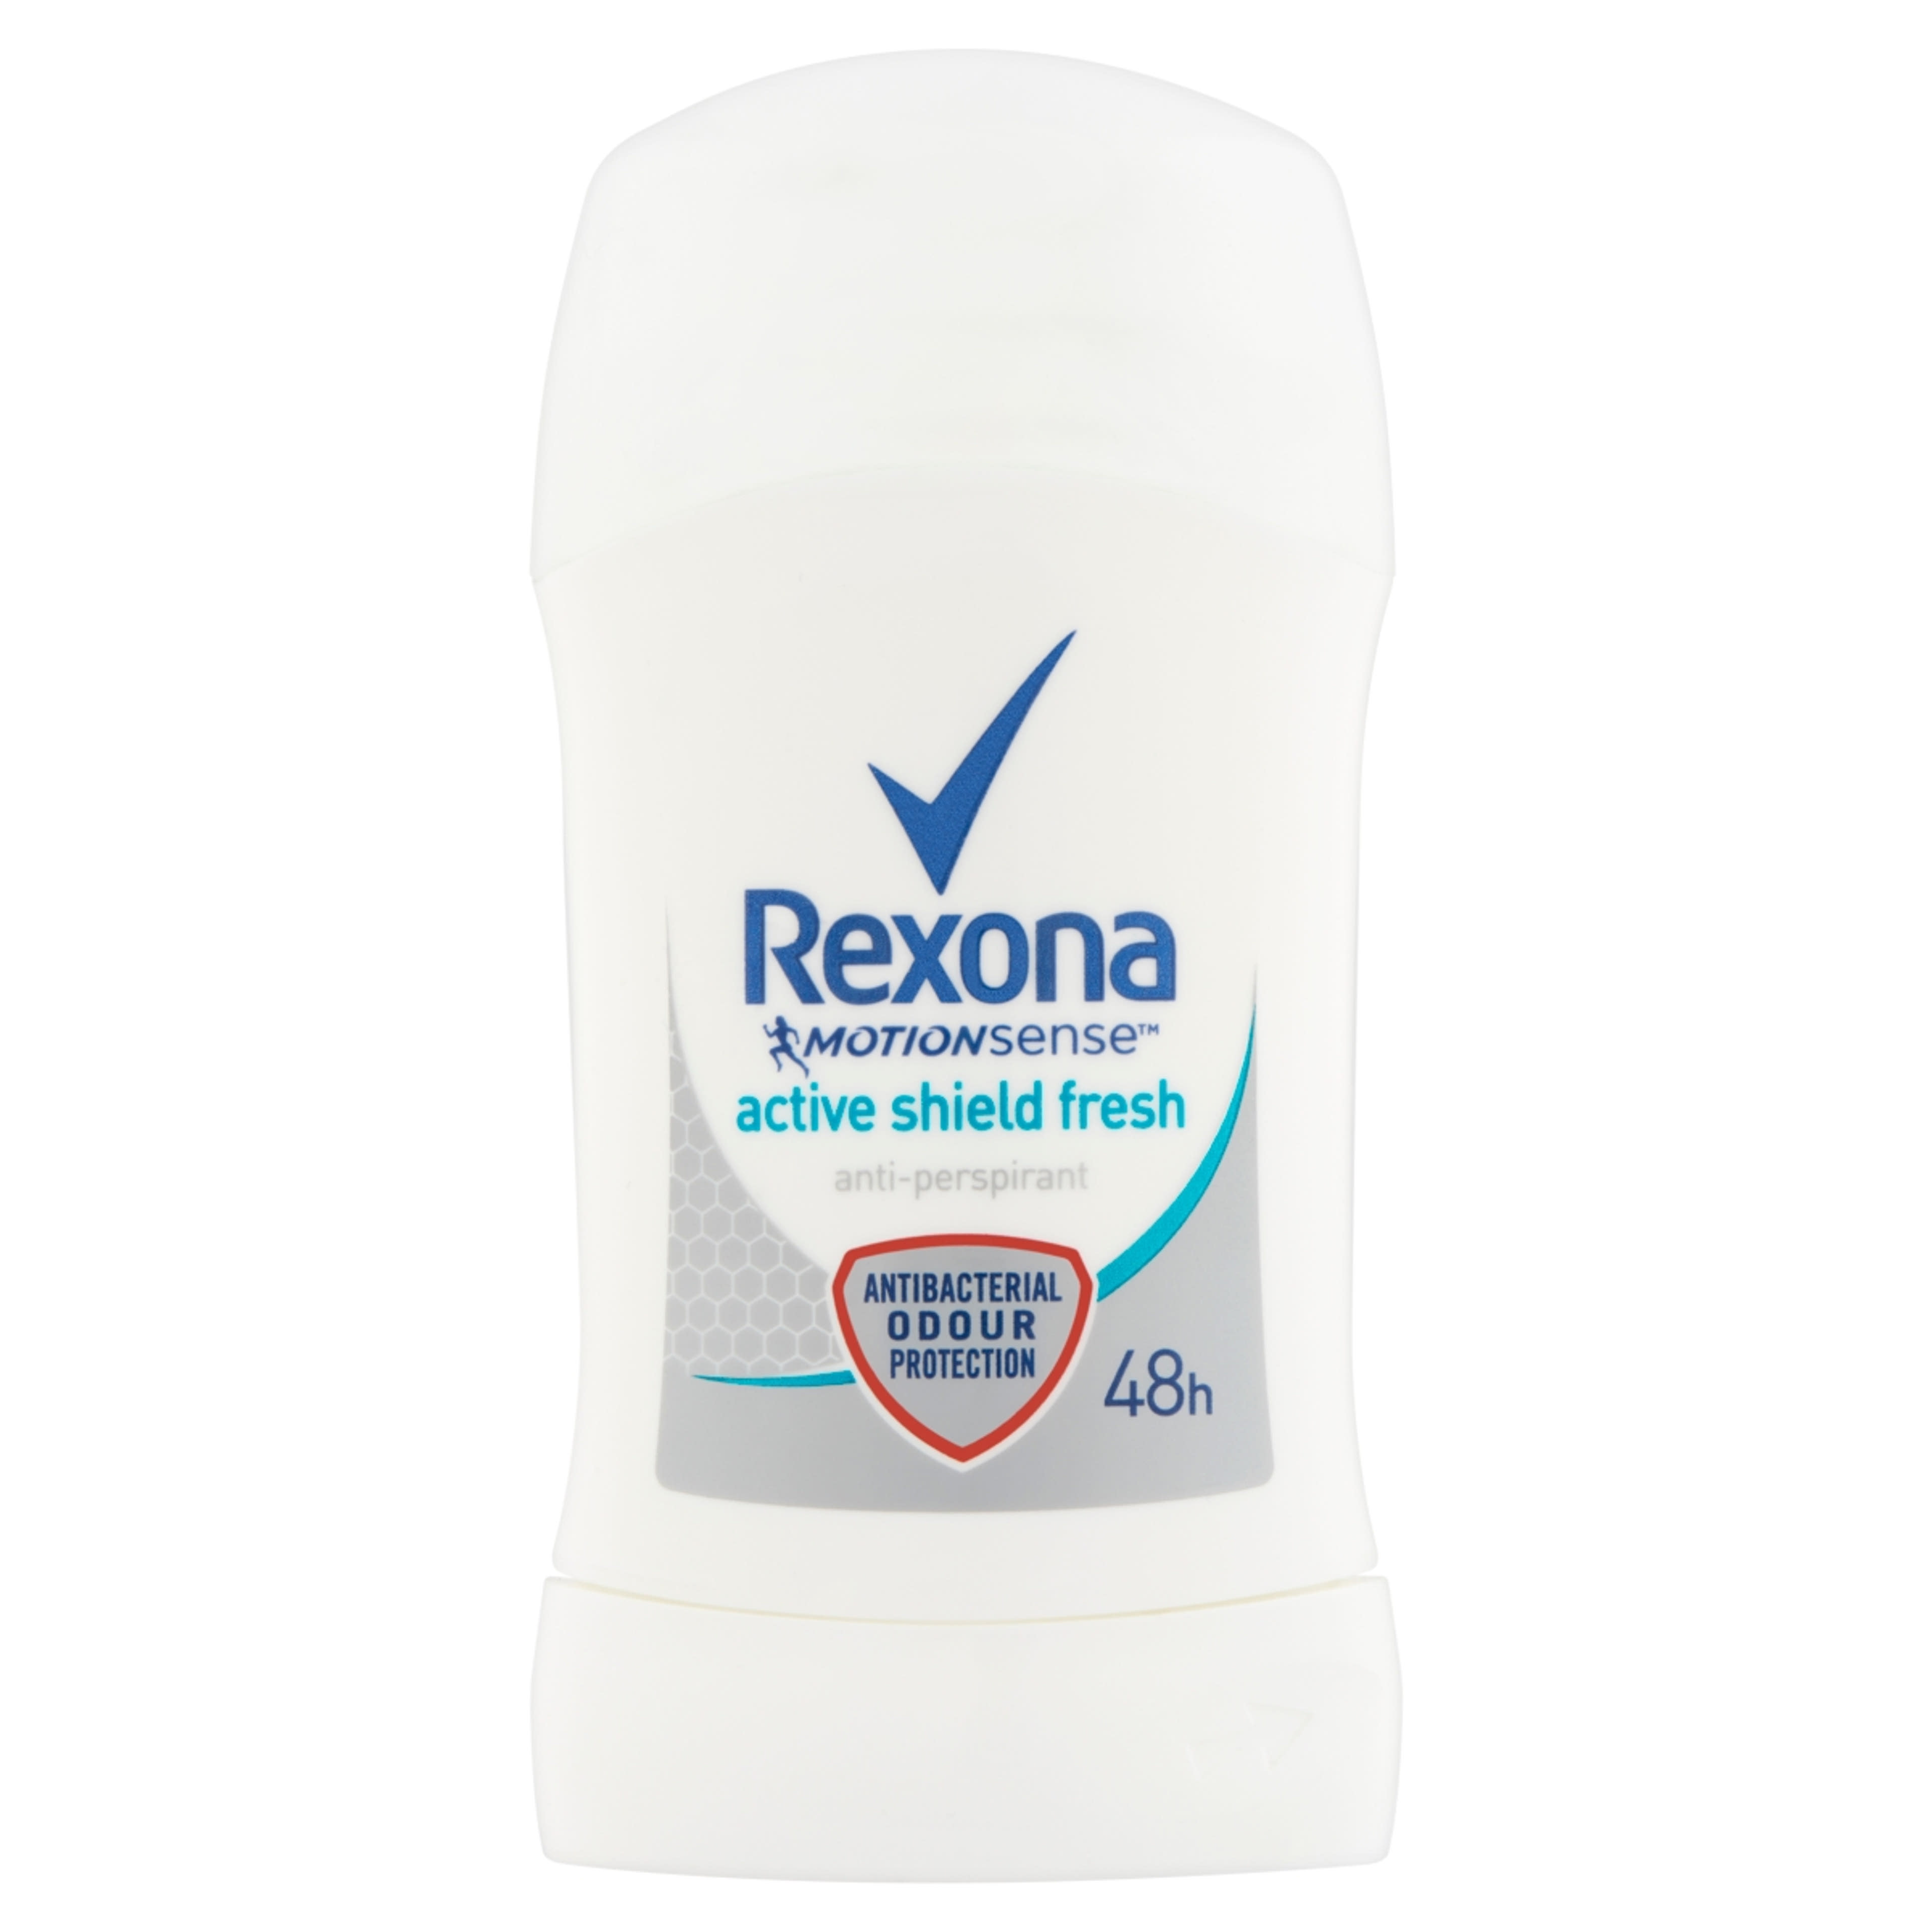 Rexona Active Protection+ Fresh izzadásgátló stift - 40 ml